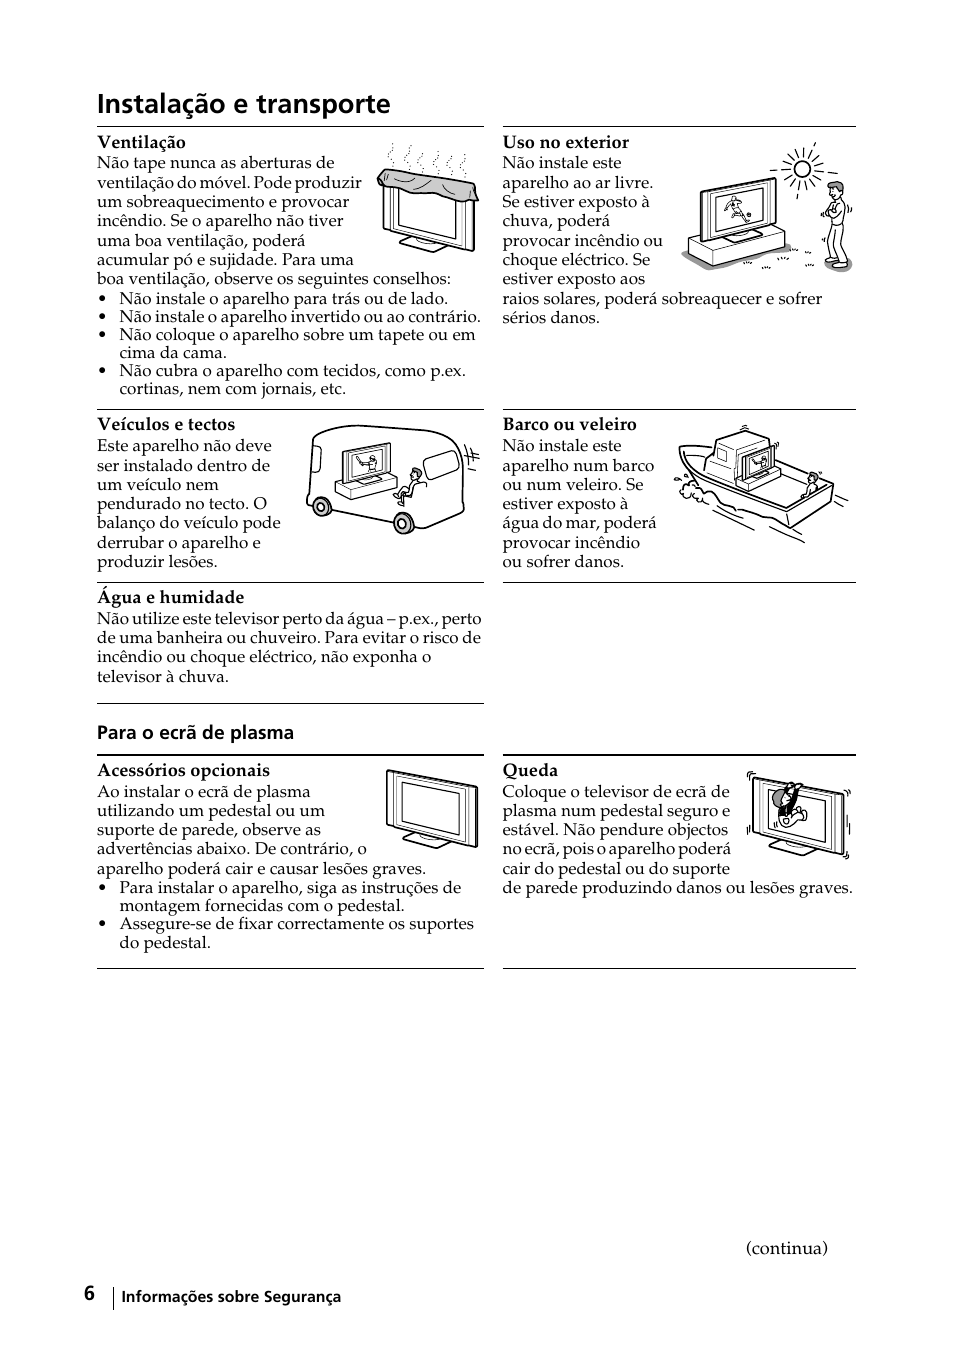 Instalação e transporte | Sony KE-42MR1 Manuale d'uso | Pagina 157 / 302